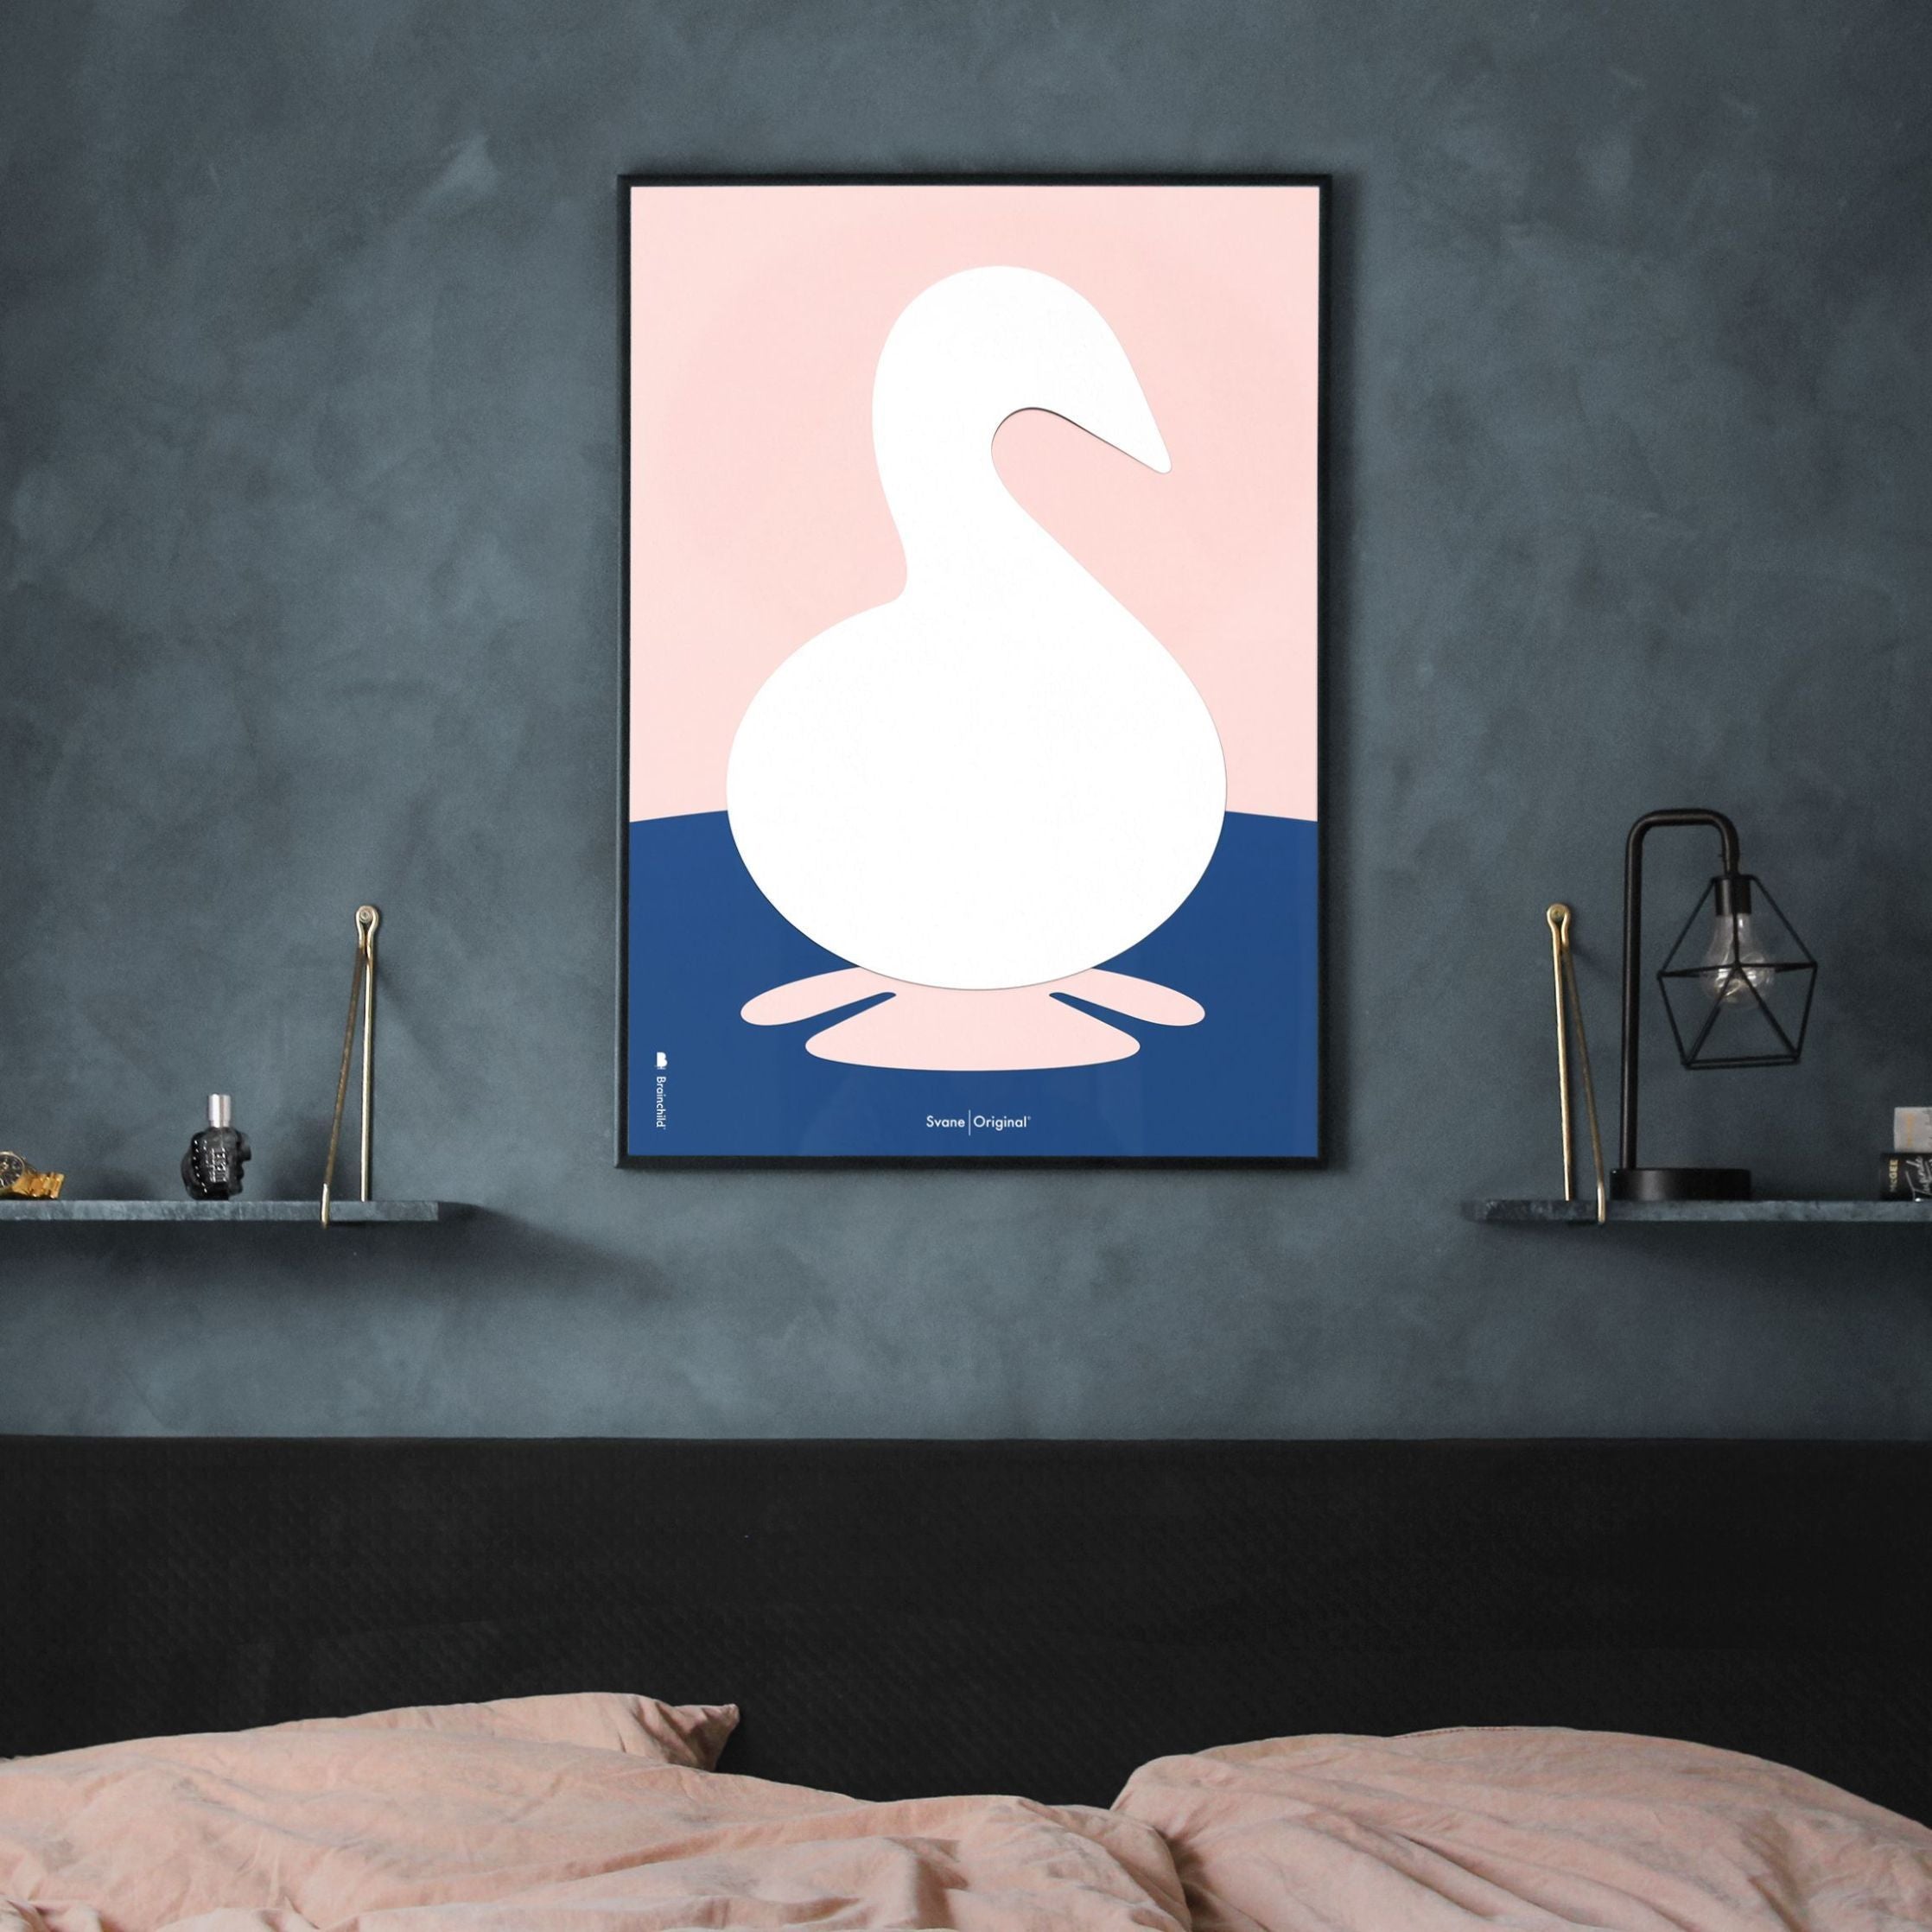 Plakát s labuťovou sponou s labuťovým papírem bez rámu A5, růžové pozadí